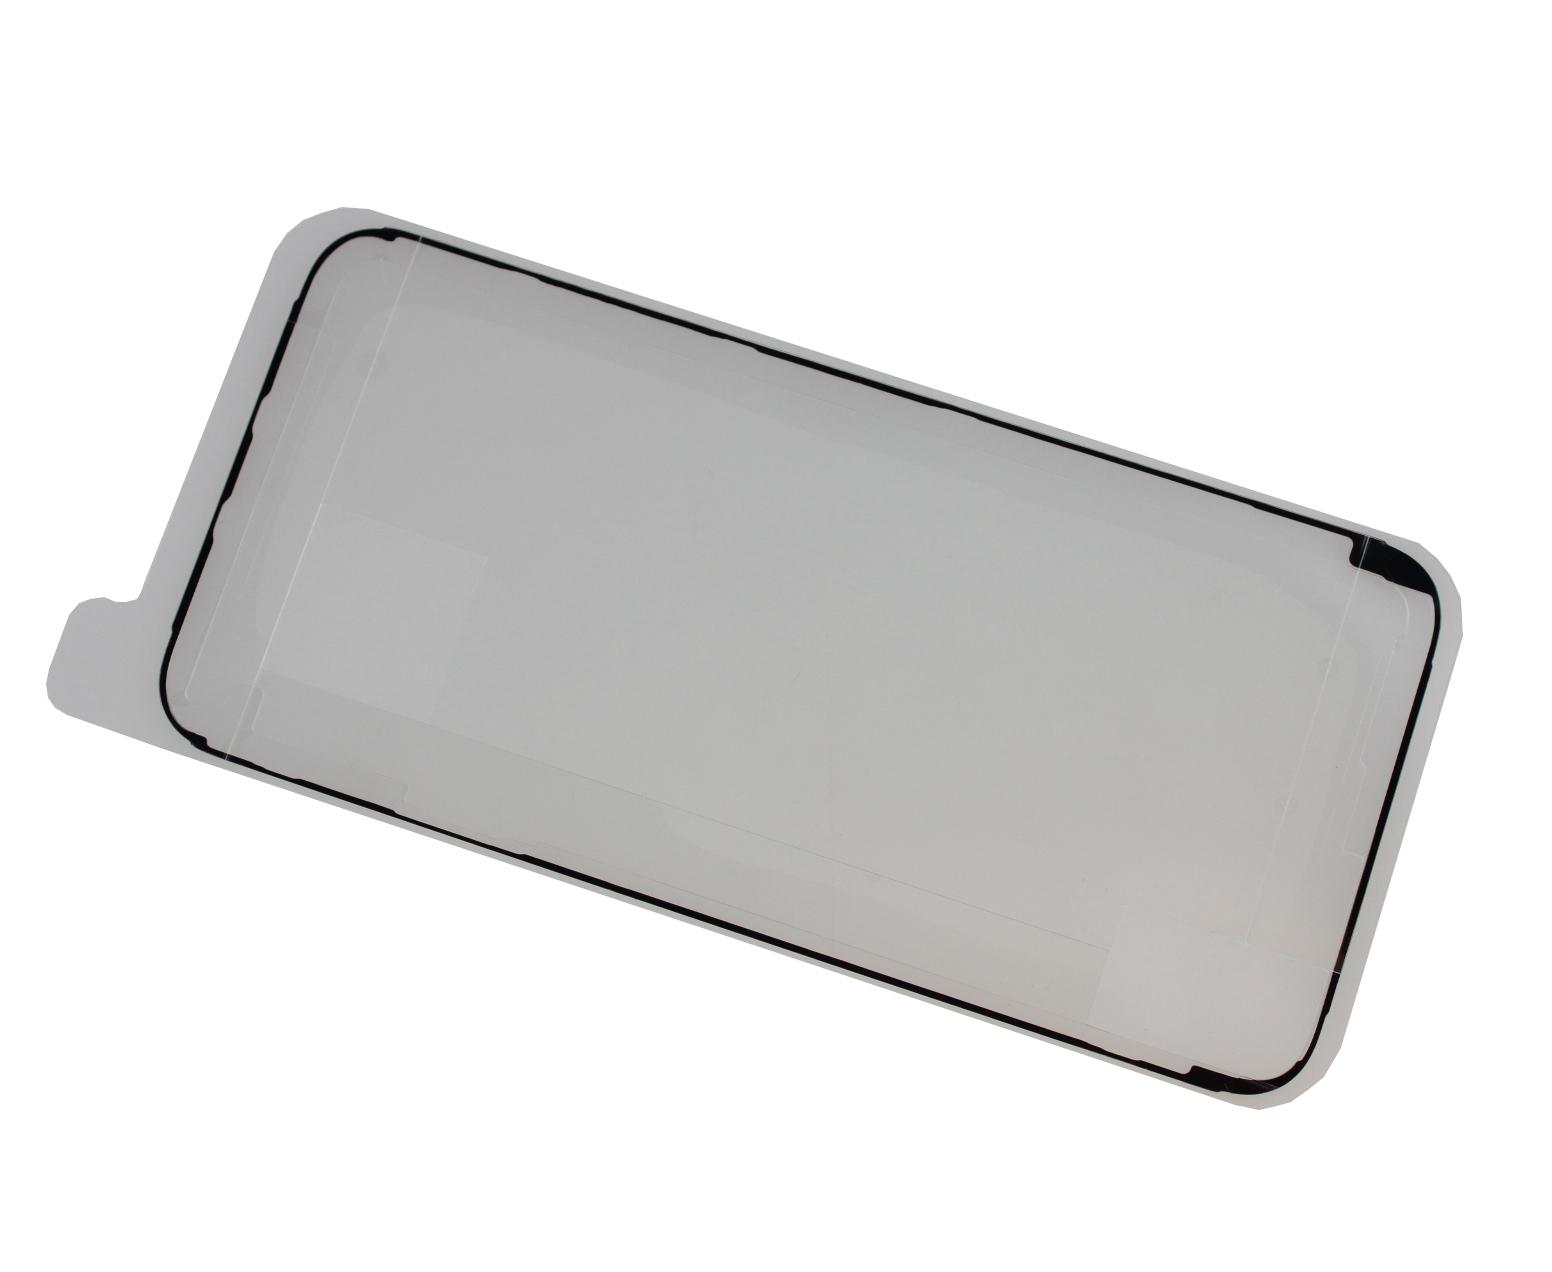 Originál montážní lepící páska LCD displeje iPhone 7 Service pack